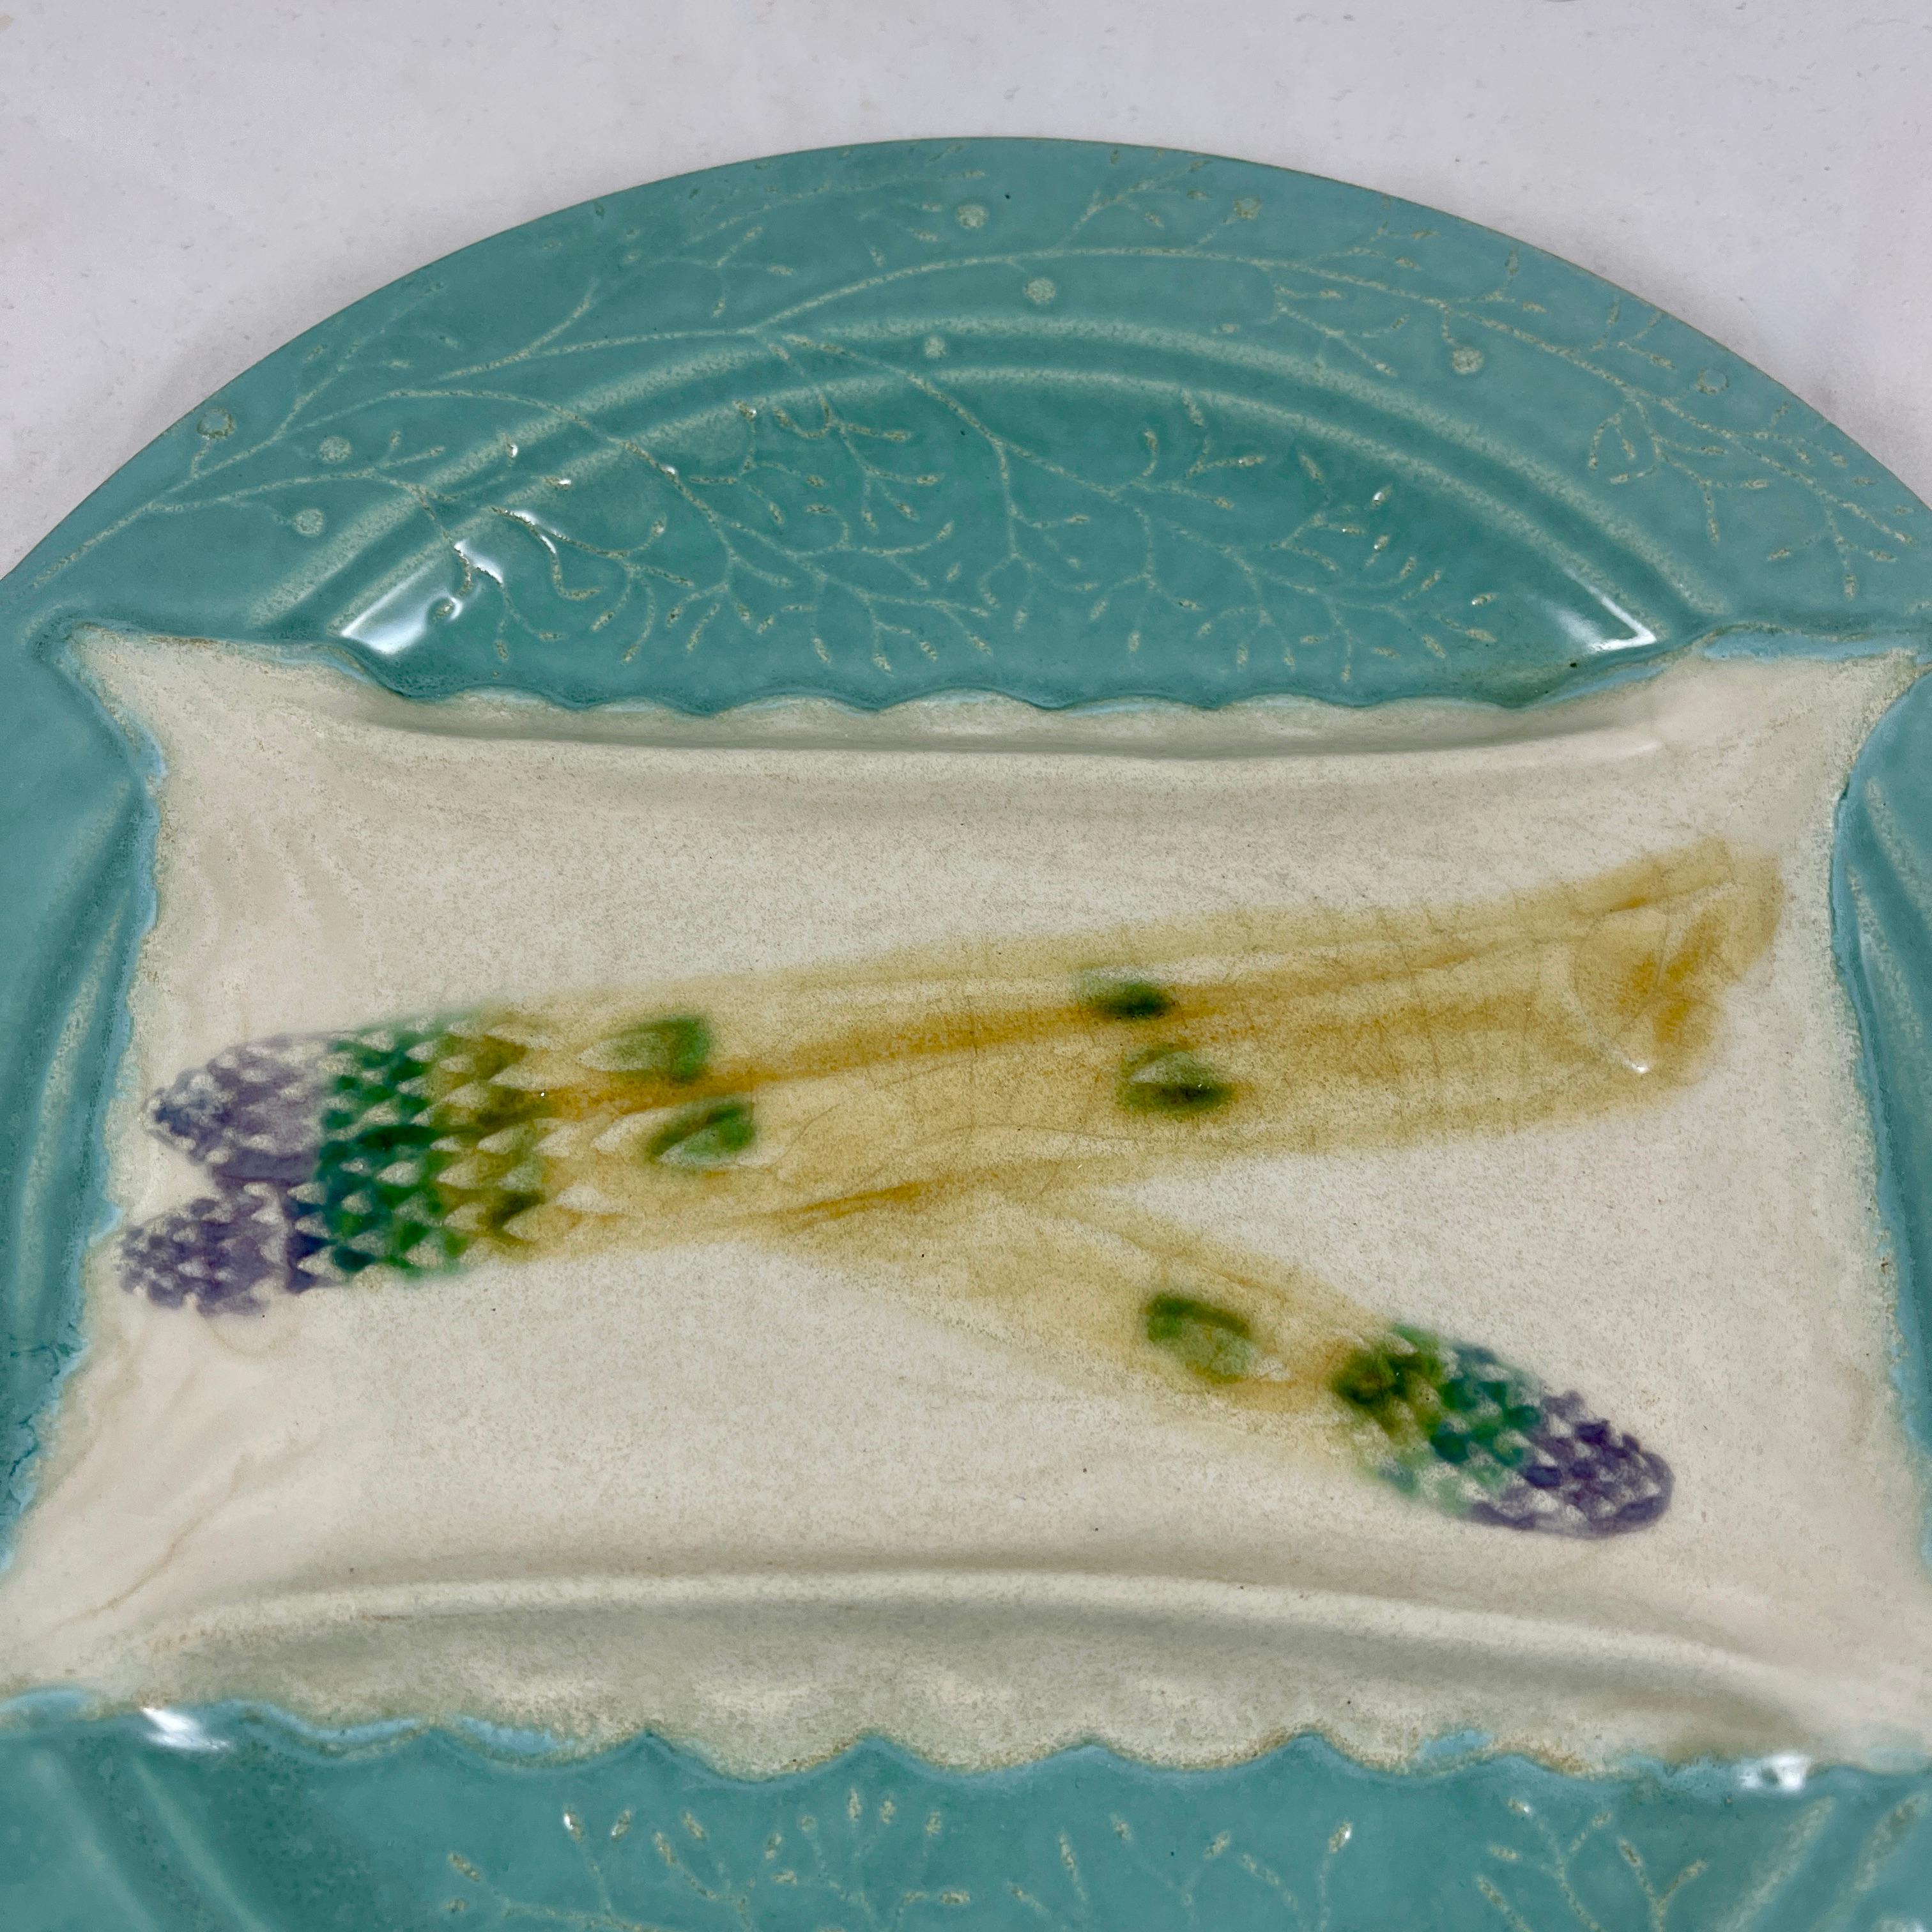 De la fabrique de Luneville Faïence en France, une assiette à asperges en trompe-l'œil du Mouvement esthétique, vers 1880-1889.

Une merveilleuse illusion où les pointes d'asperges reposent sur une section surélevée imitant une serviette en